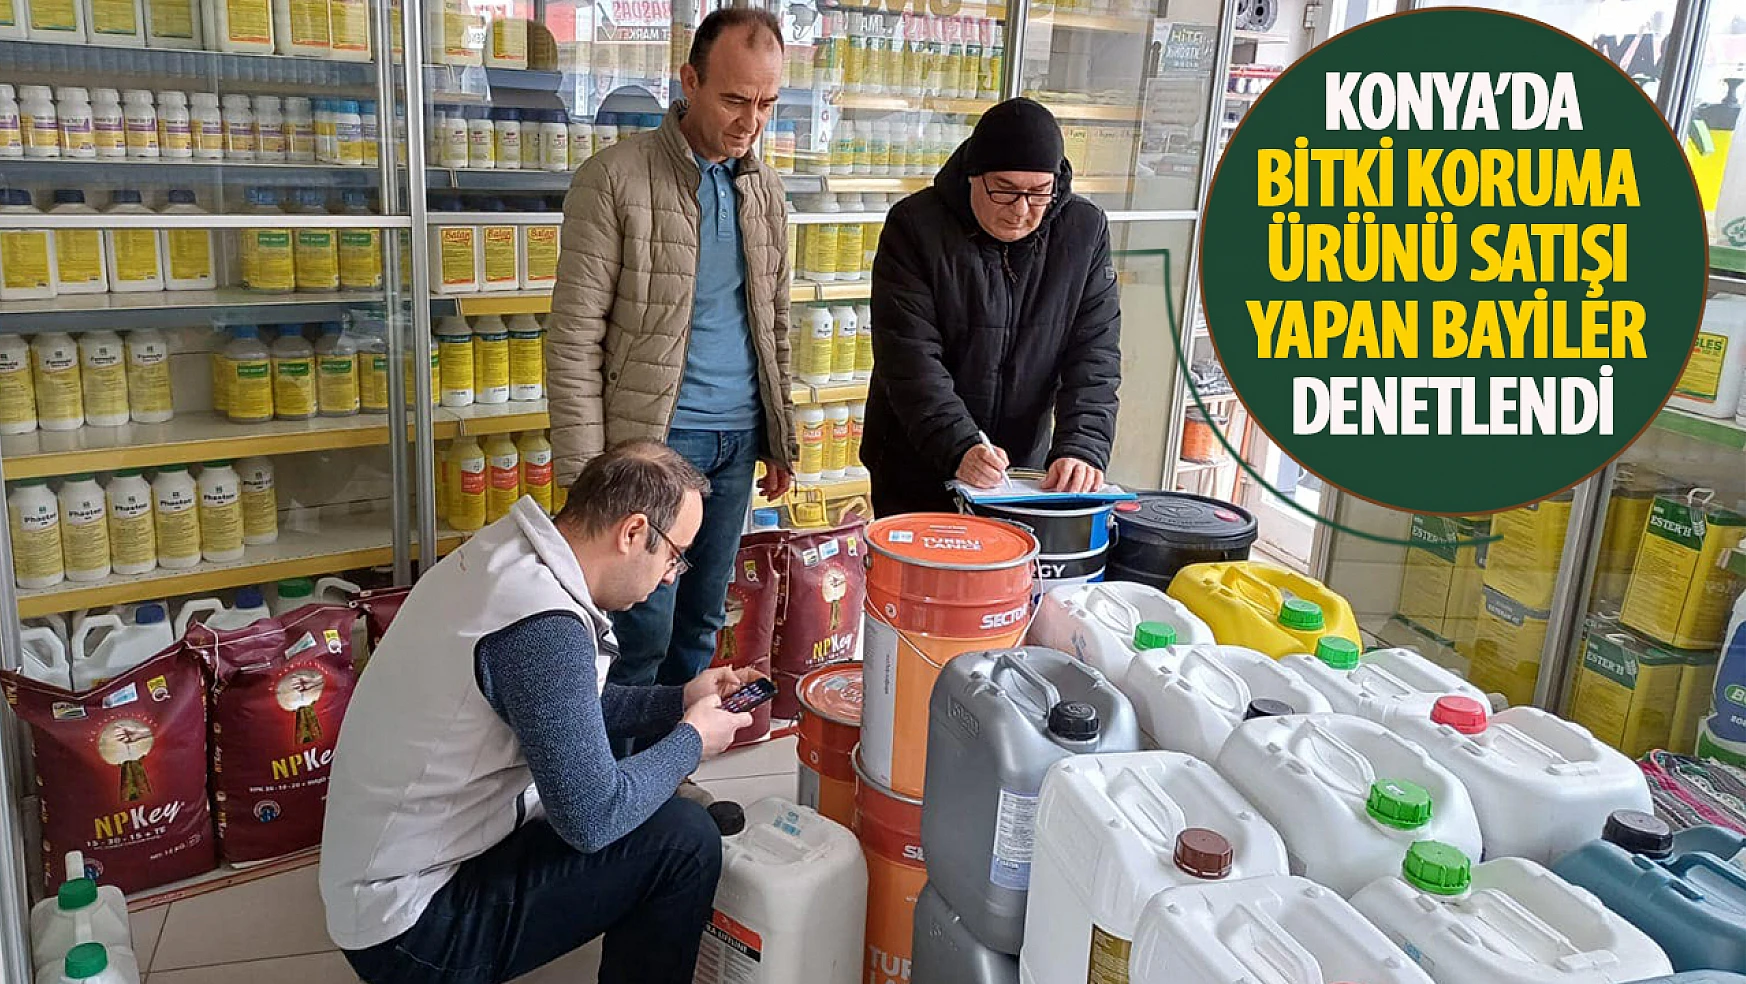 Konya'da bitki koruma ürünü satışı yapan bayiler denetlendi